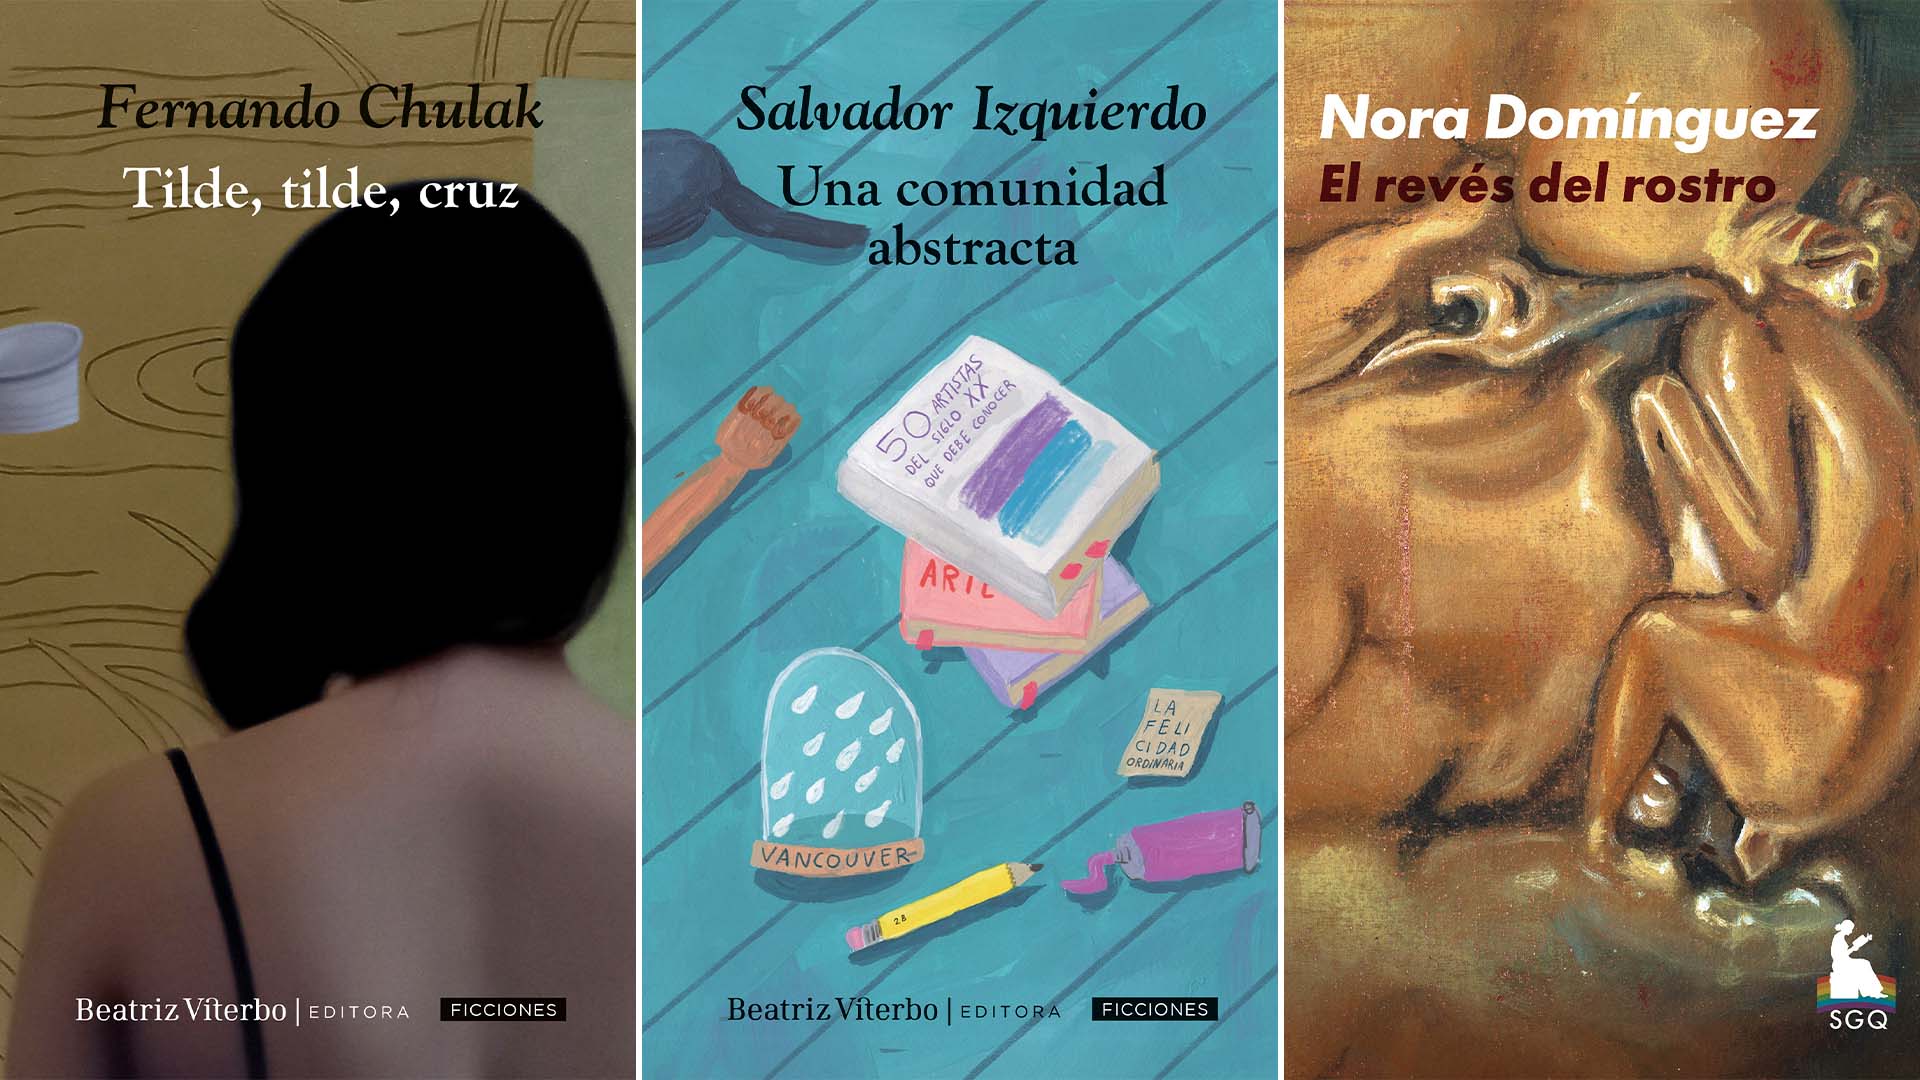 Los nuevos títulos de Beatriz Viterbo: "Tilde, tilde, cruz", de Fernando Chulak, "El revés del rostro", de Nora Domínguez, y "Una comunidad abstracta", de Salvador Izquierdo